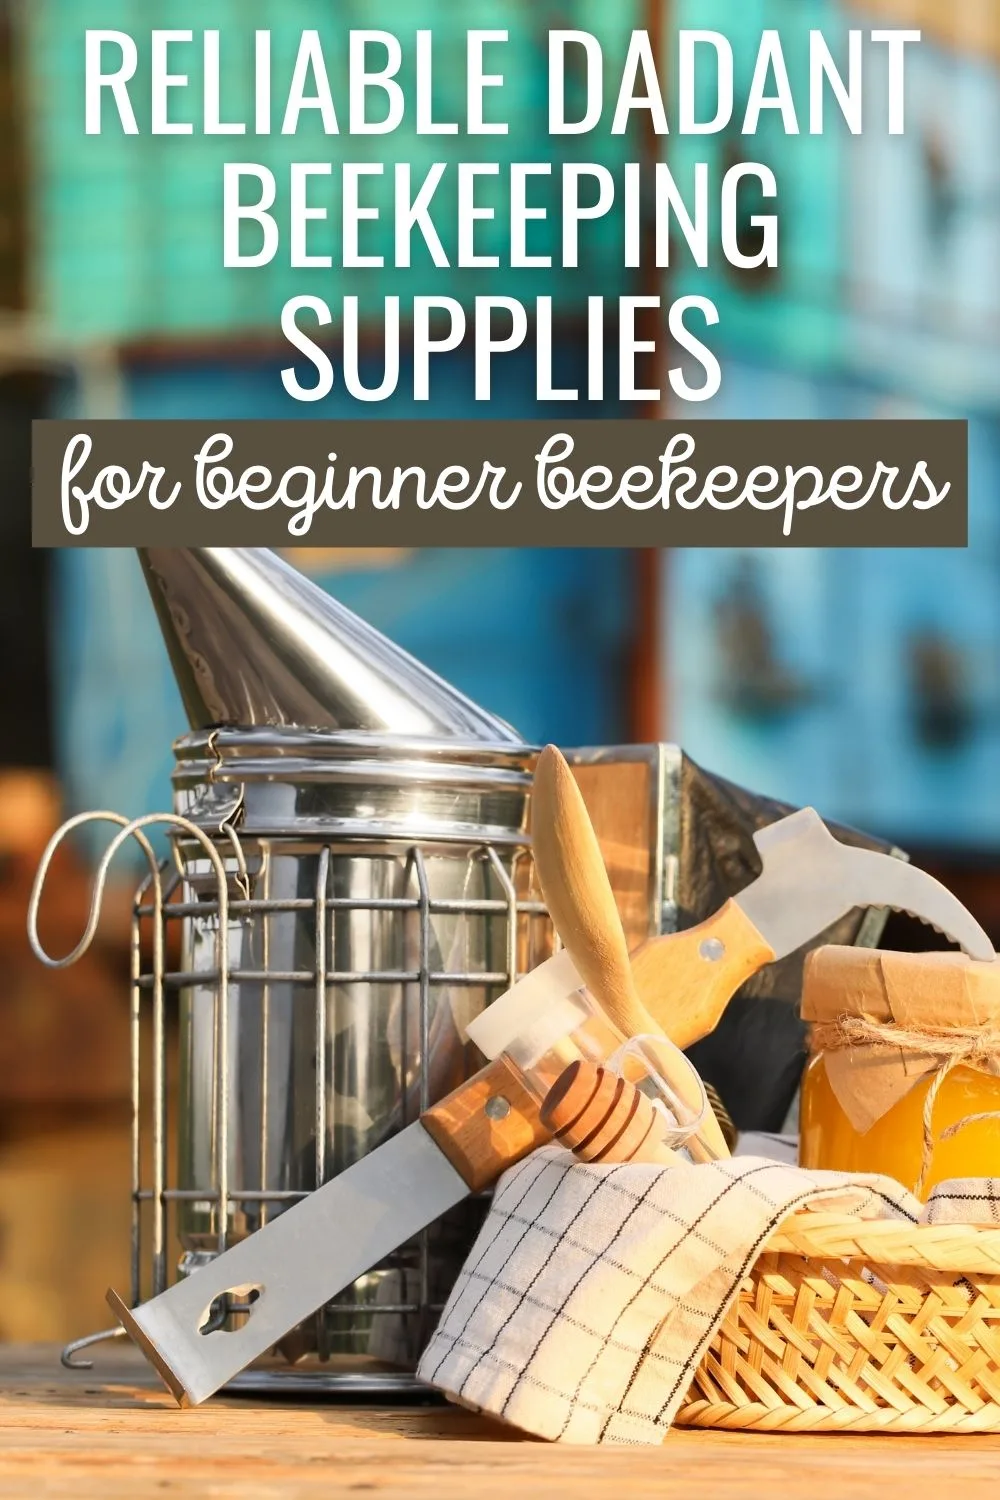 Reliable Dadant beekeeping suplies for beginner beekeepers